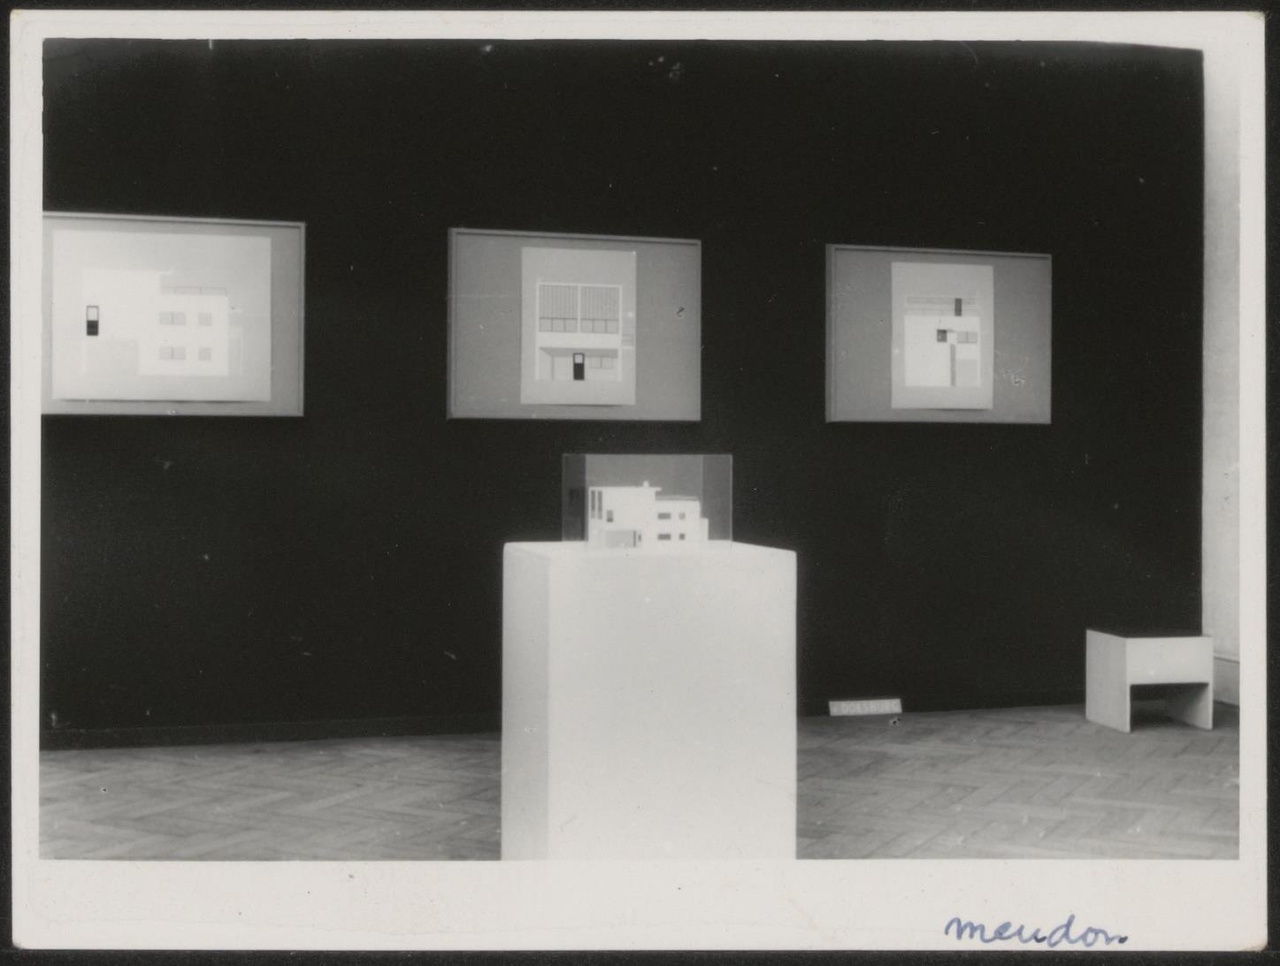 Afbeelding van tentoonstelling De Stijl SMA, 1951, zaal 2, zwarte wand met gevels en maquette Meudon